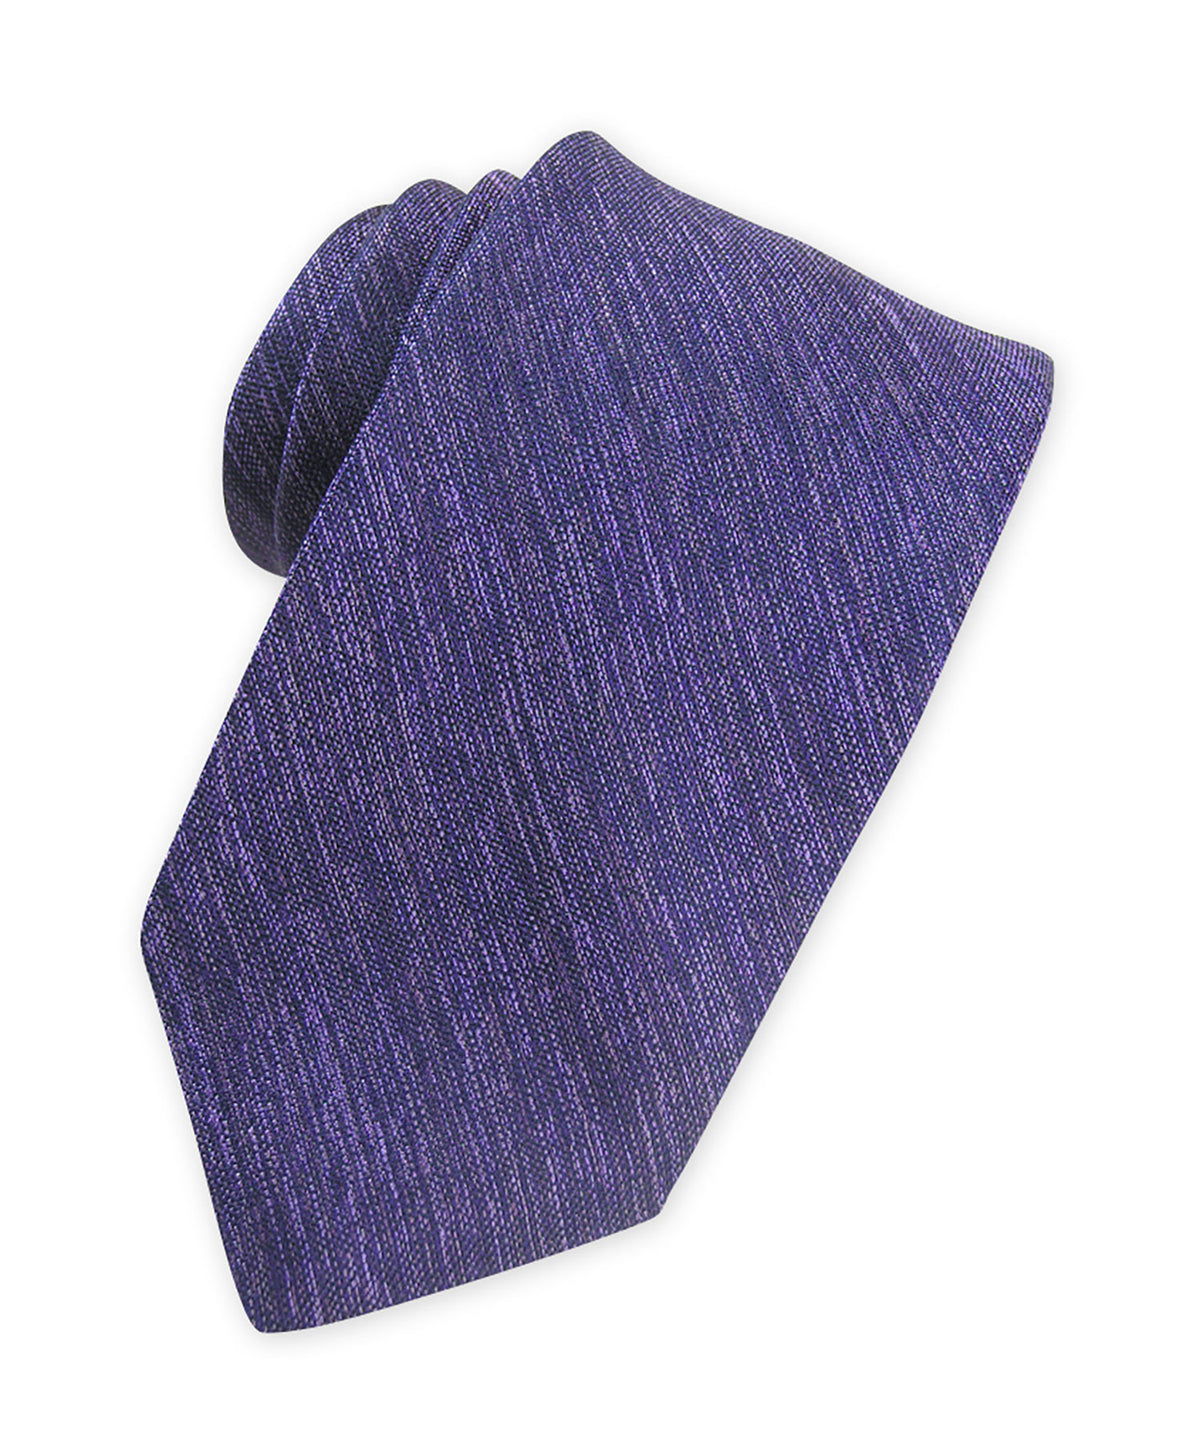 Westport Black Solid Woven Melange Tie, Men's Big & Tall